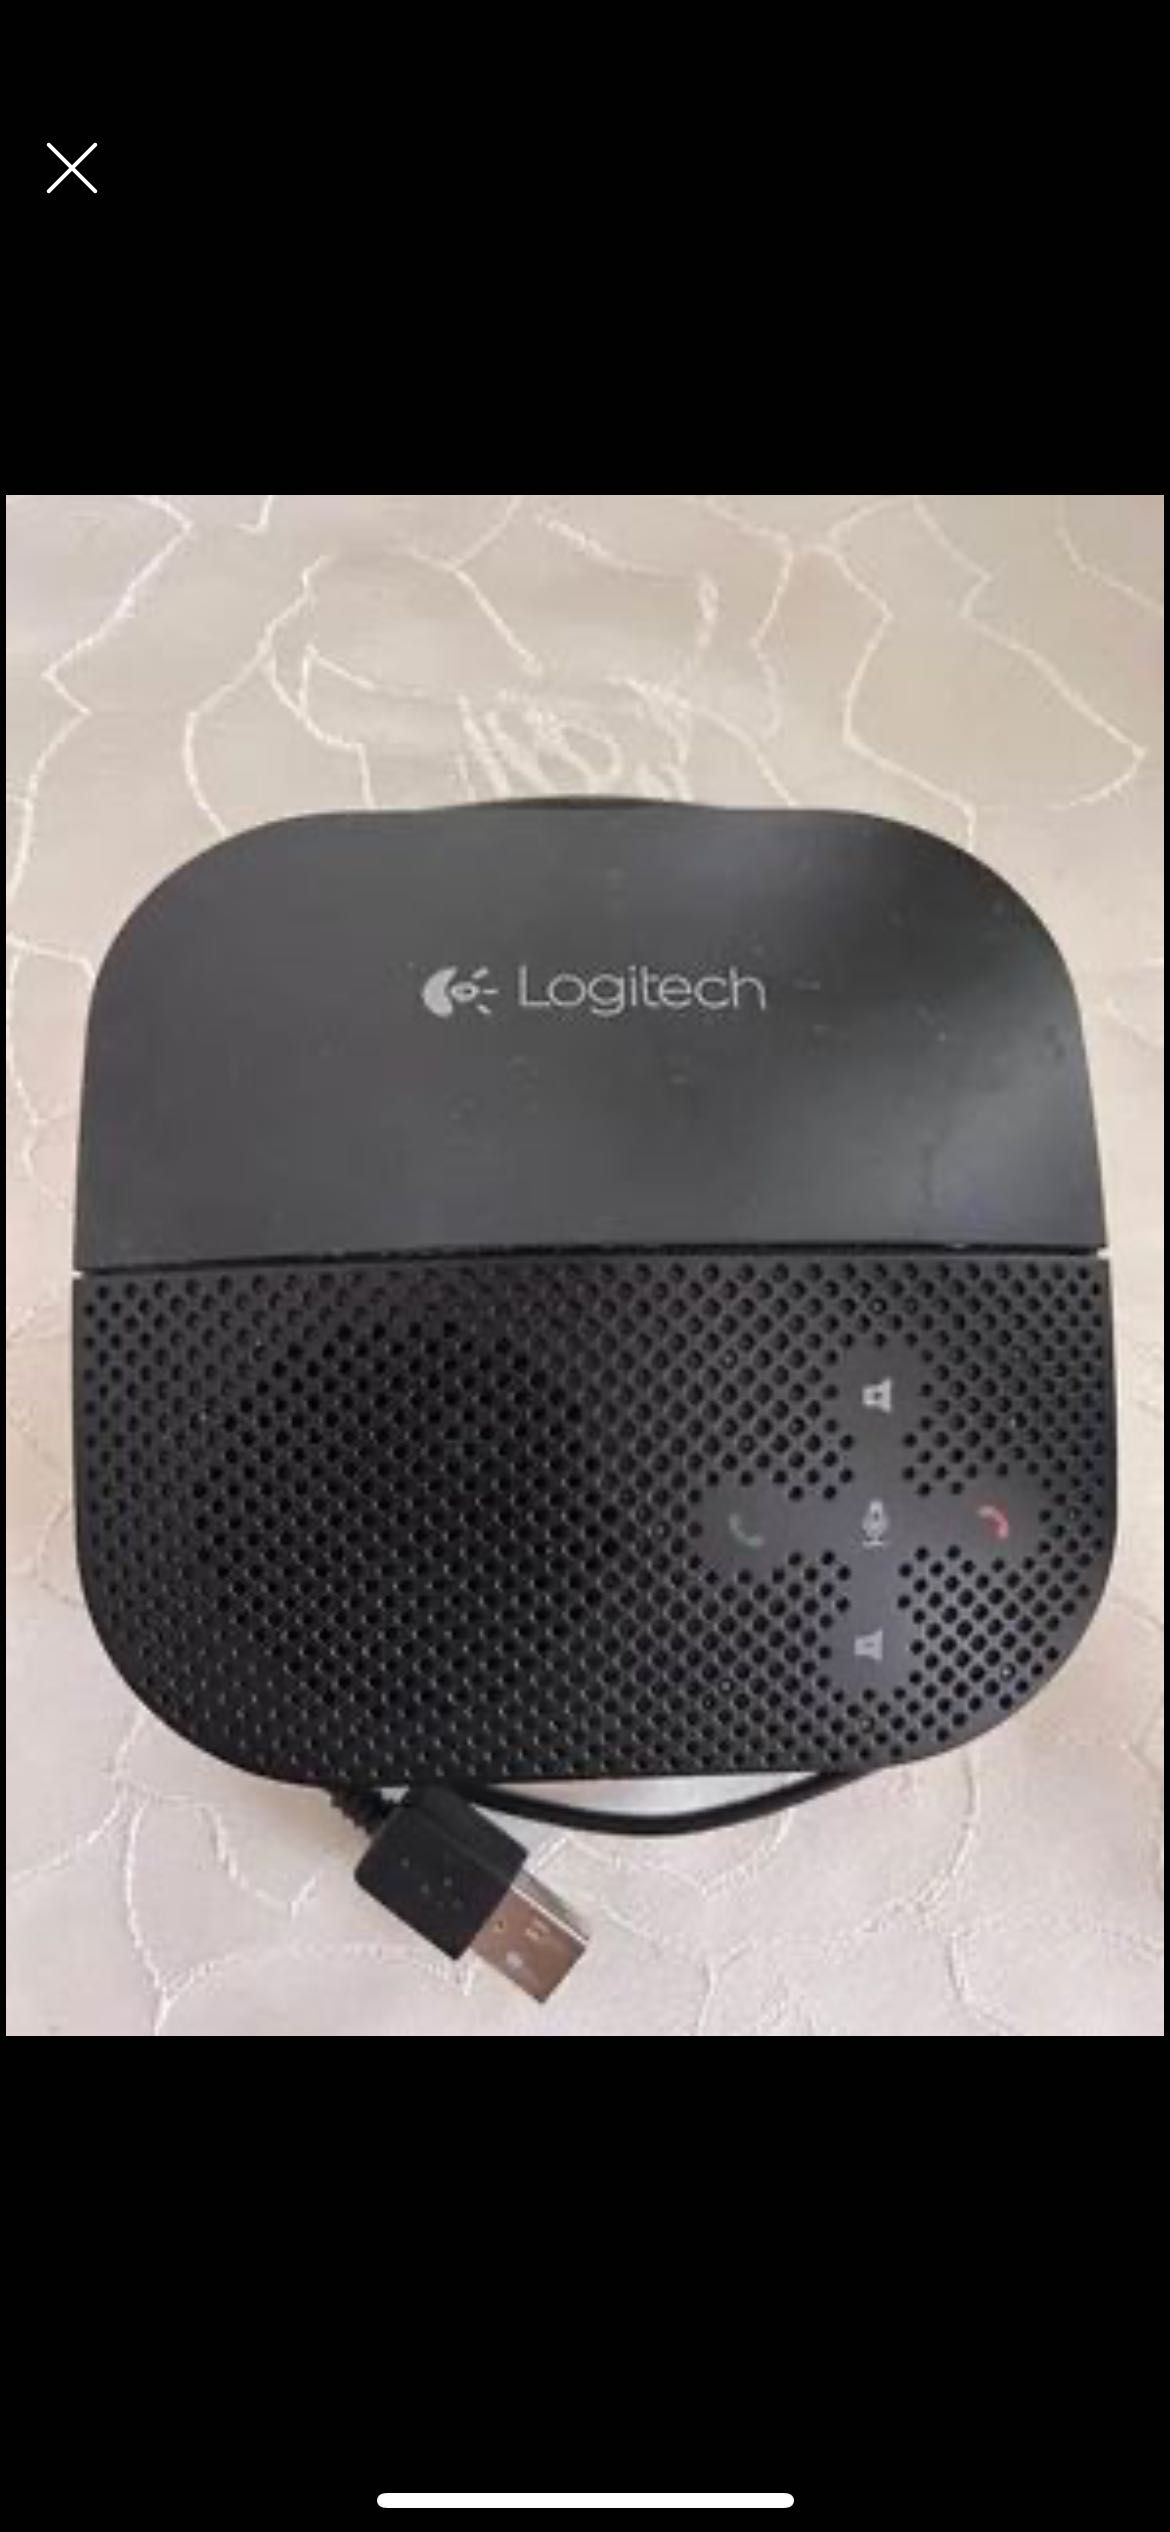 zestaw głośnomówiący Logitech Mobile Speakerphone P710